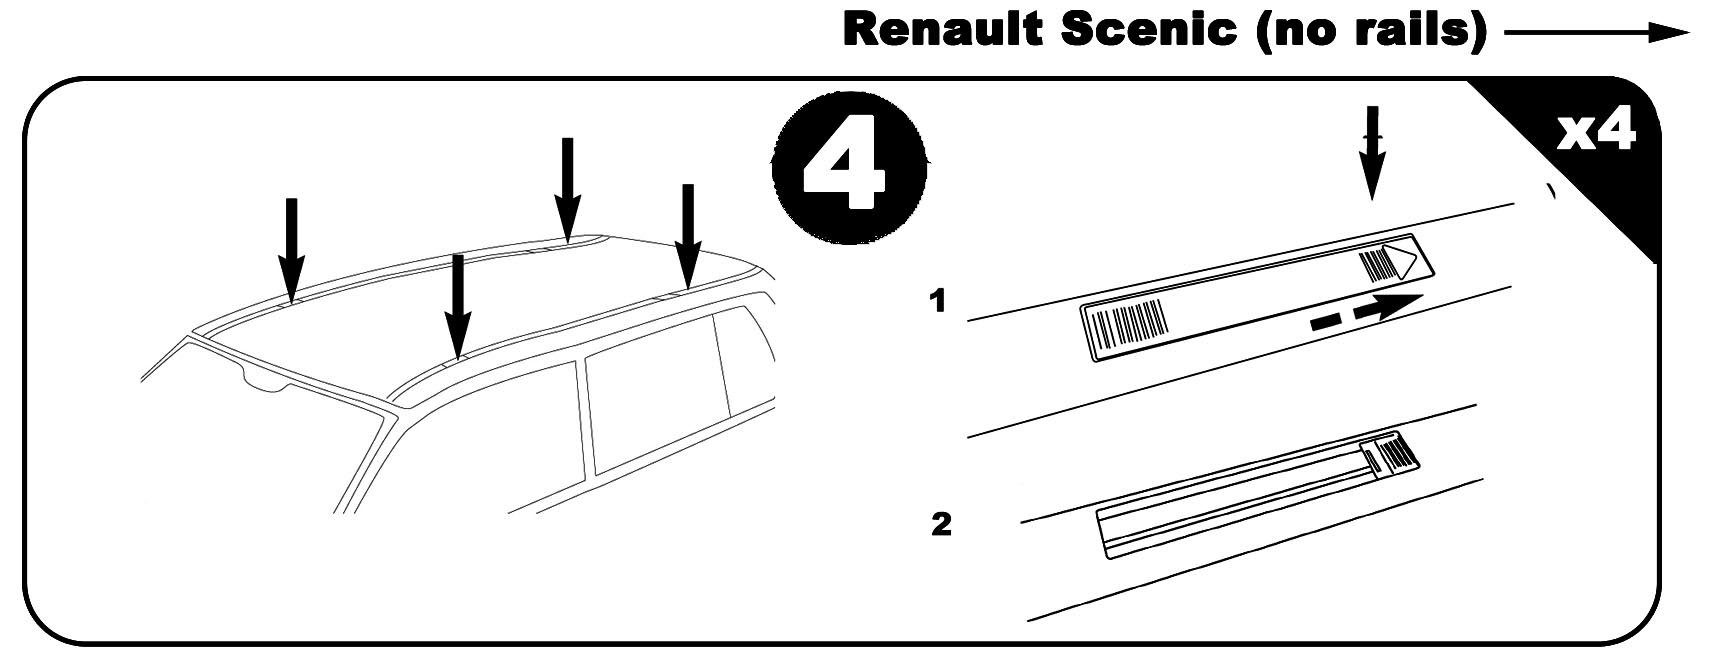 VDP Dachbox, (5Türer) Scenic Renault kompatibel 1996-2003), weiß 1996-2003 460Ltr Aurilis Renault (Passend abschließbar (5Türer) für Dachbox I VDPMAA460 I Dachträger Stahl + Scenic Original mit